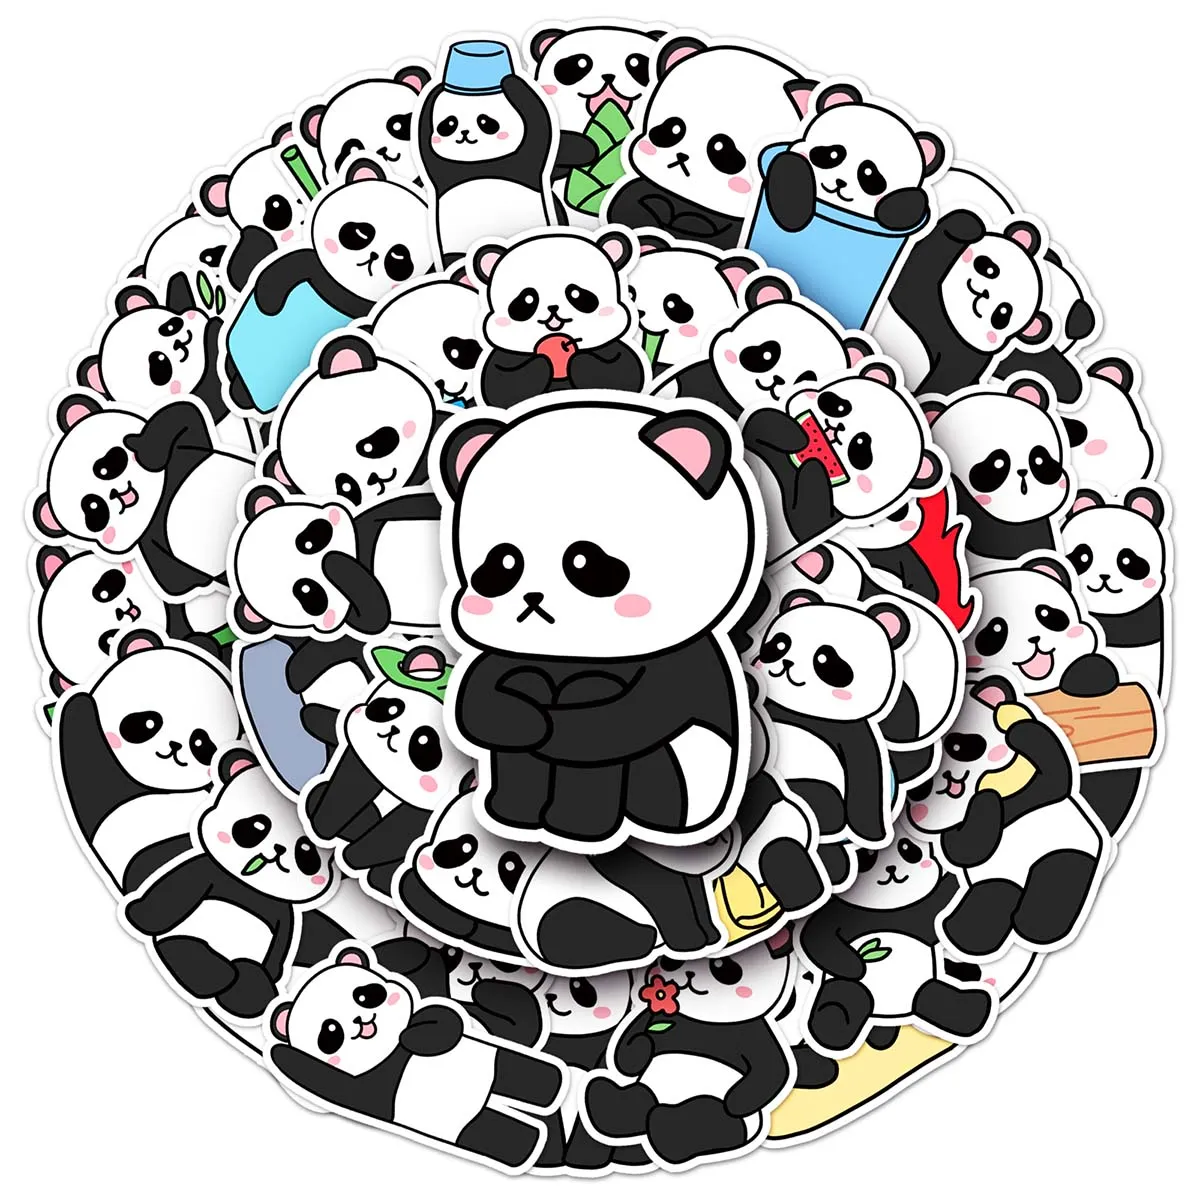 50 pezzi adesivi creativi per animali panda simpatico cartone animato PVC skateboard diario fai da te decorazione impermeabile per auto